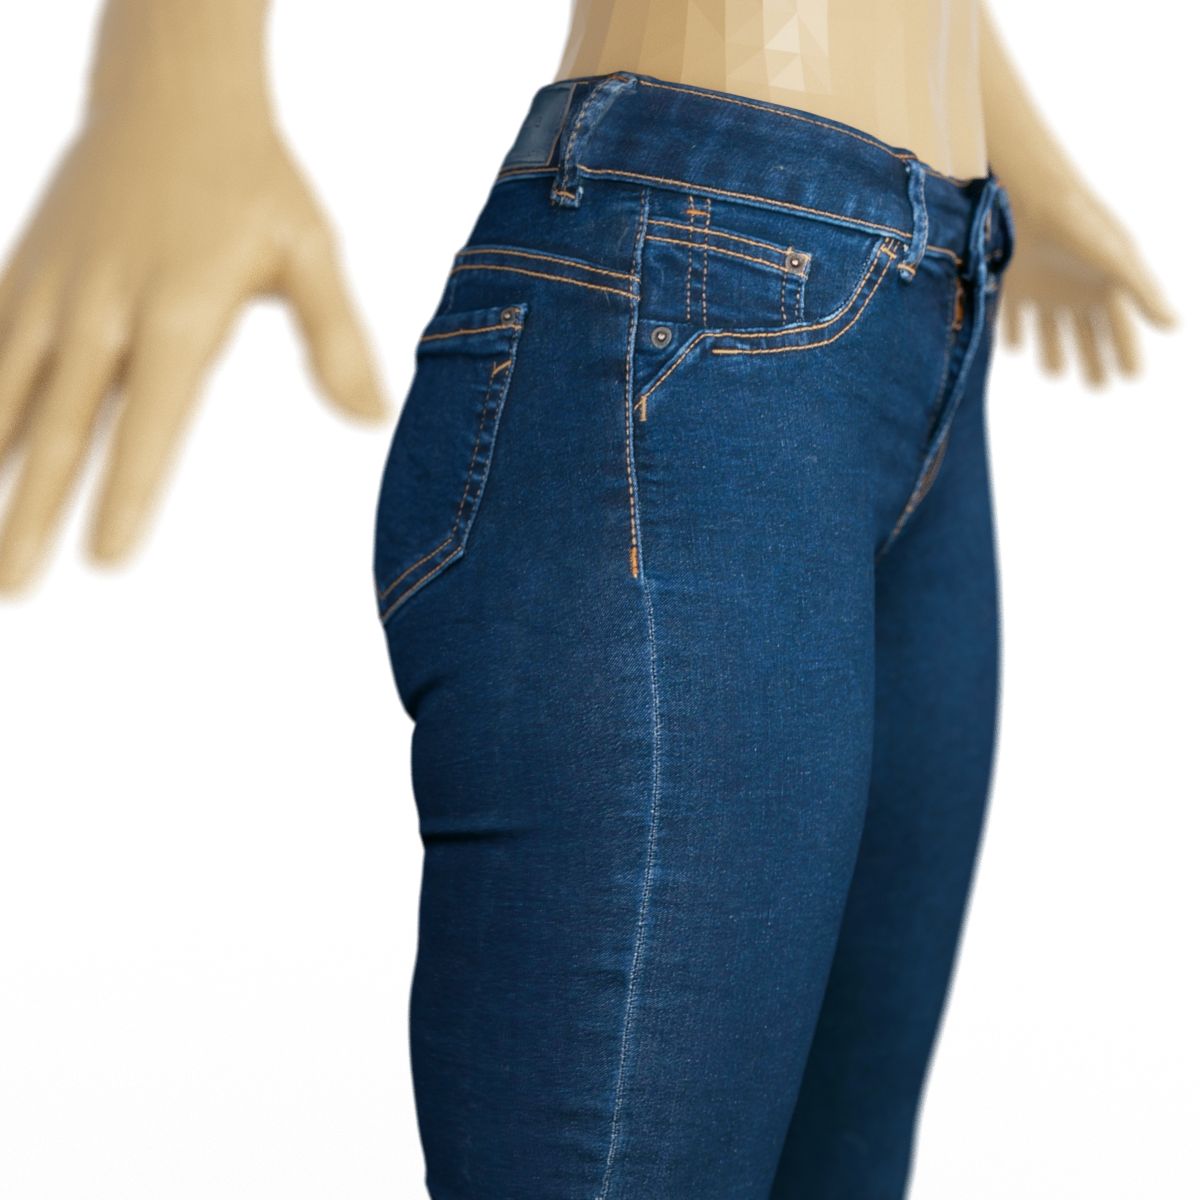 Vintage Trousers Jeans Blue